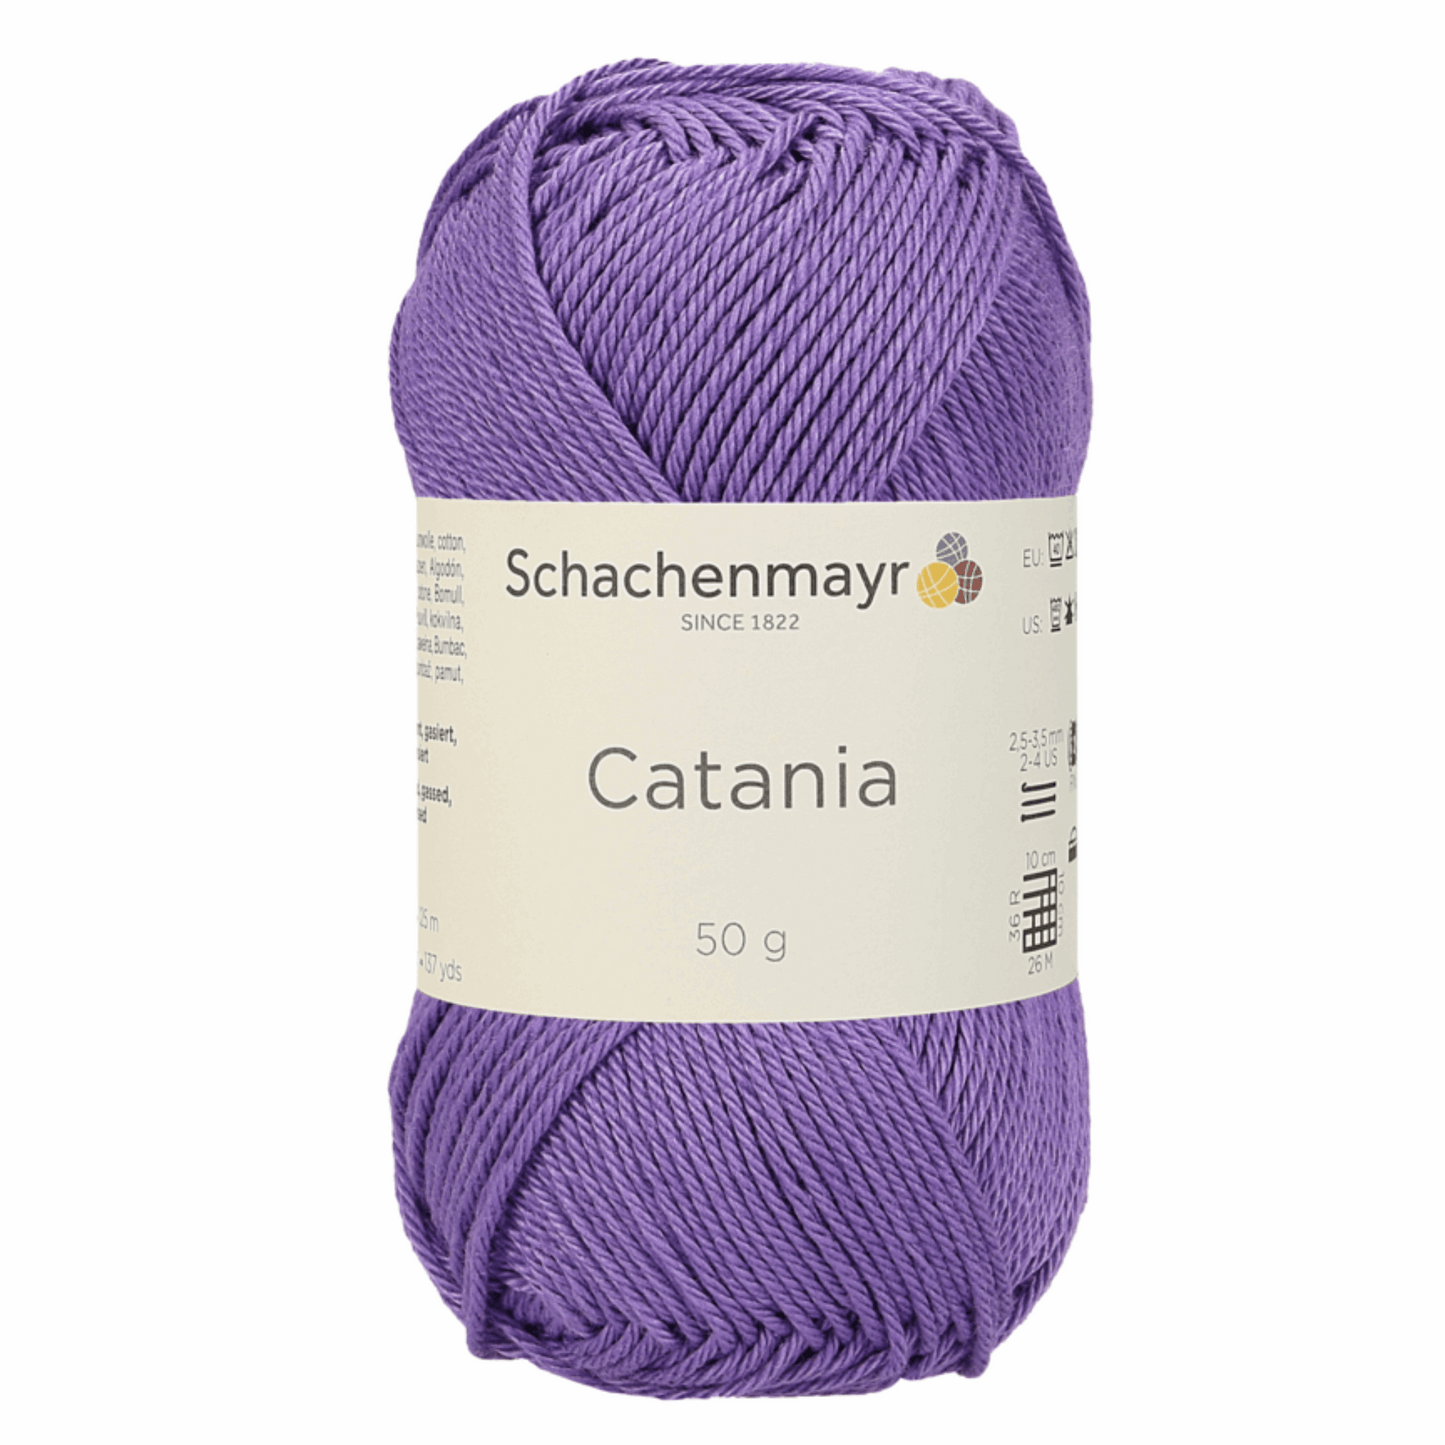 Catania 50g, 90344, Farbe 113, violett